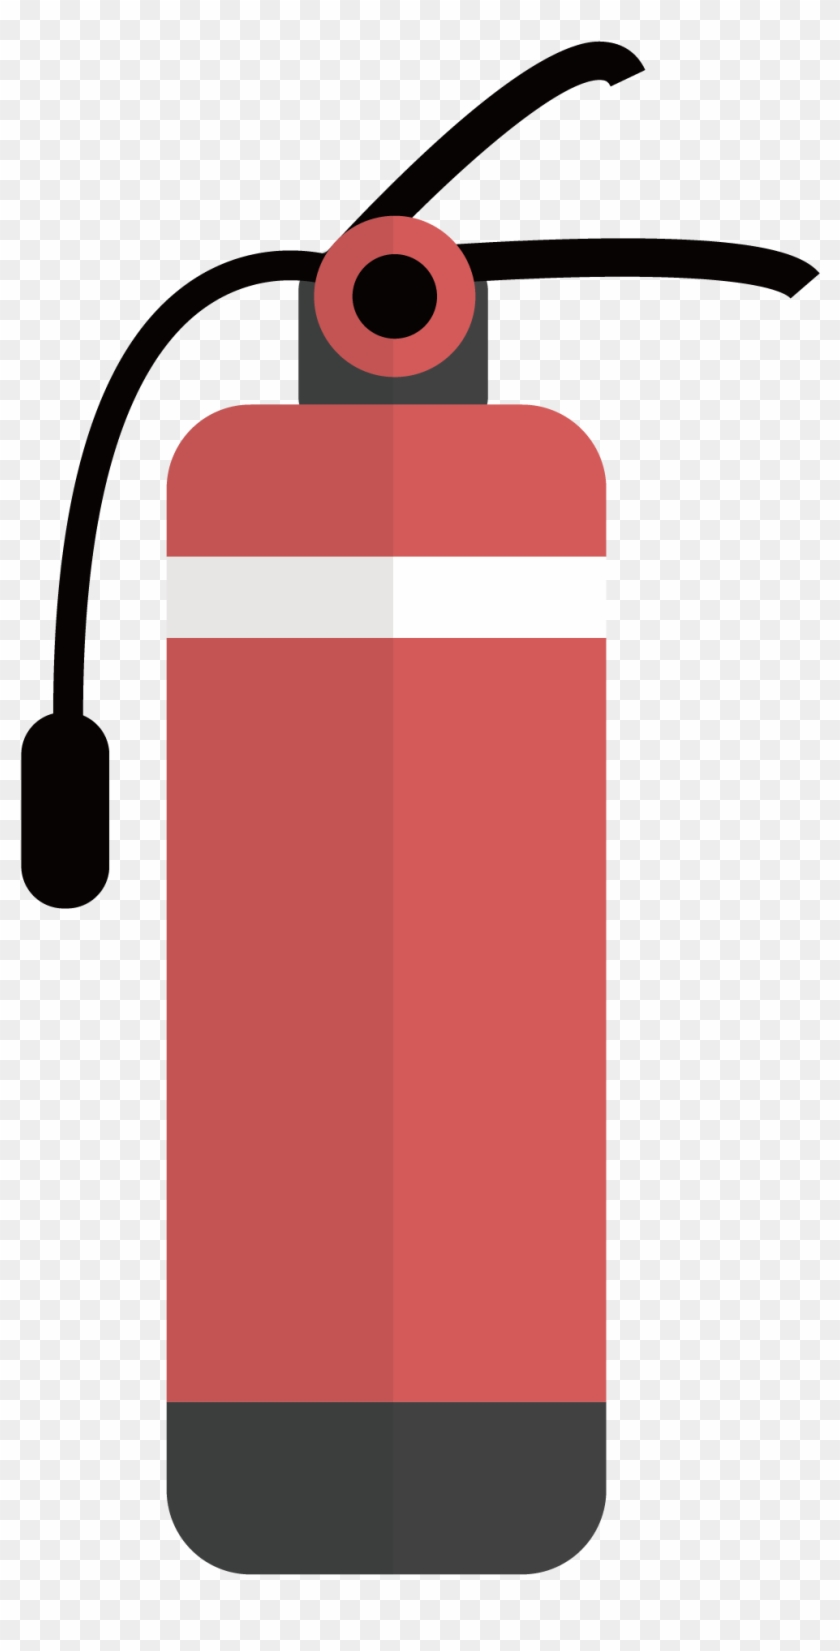 Conflagration Fire Extinguisher Firefighting - รูป ป้าย ถัง ดับ เพลิง #1105526